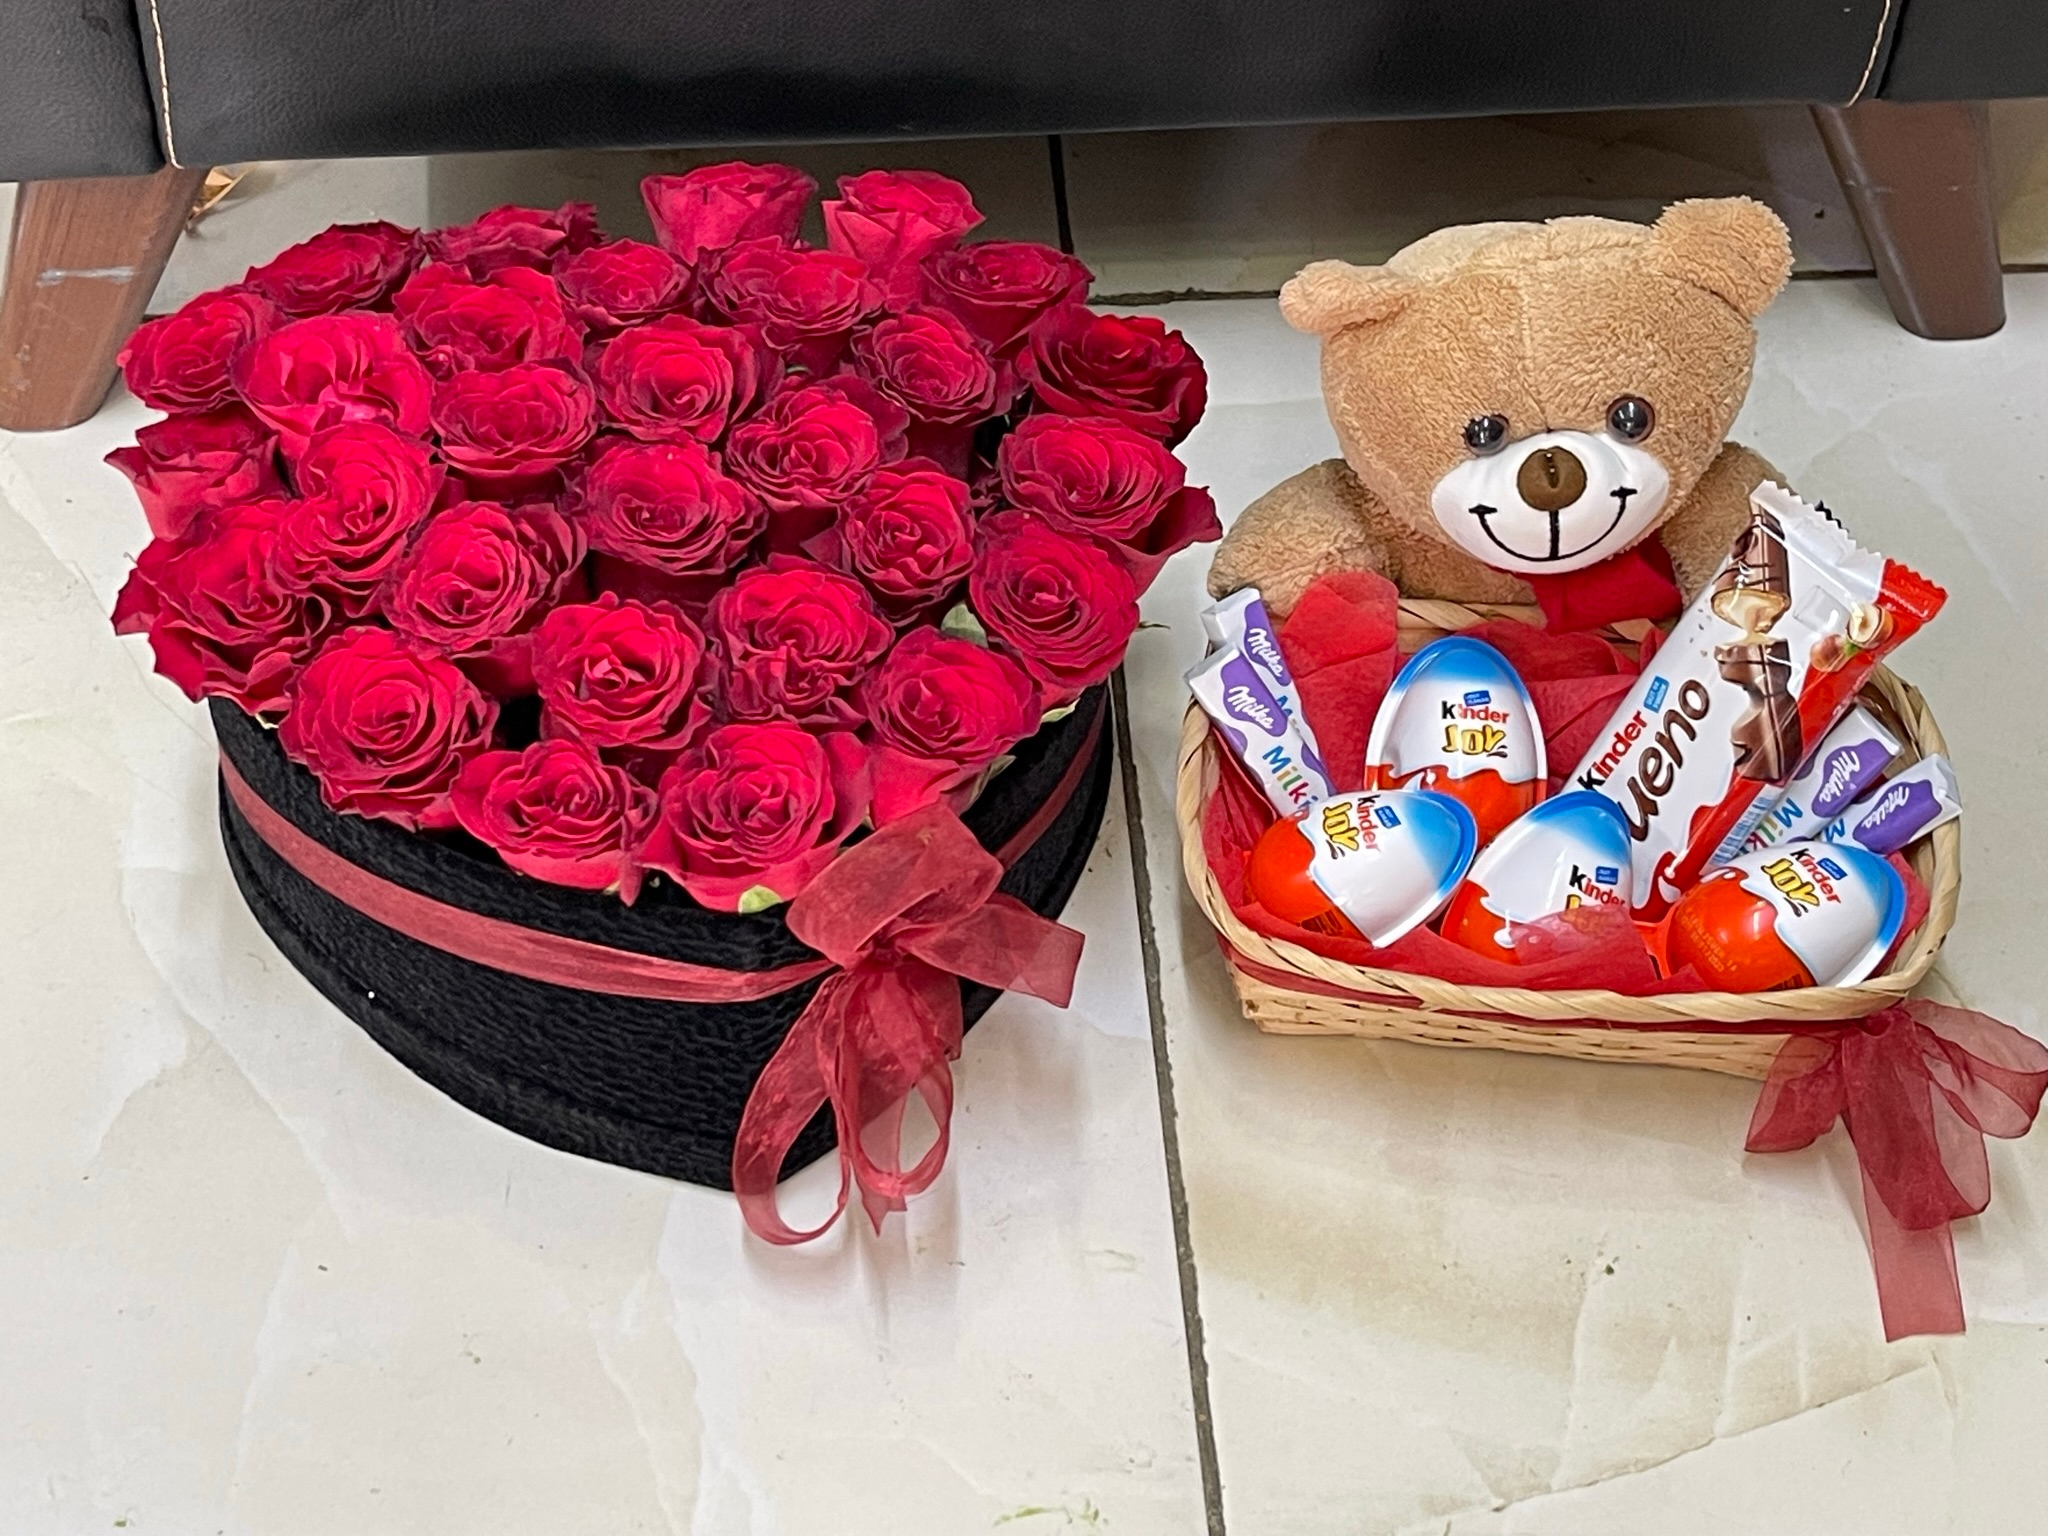  Доставка цветов в Кемер  29 роз в сердечке и подарочной корзине